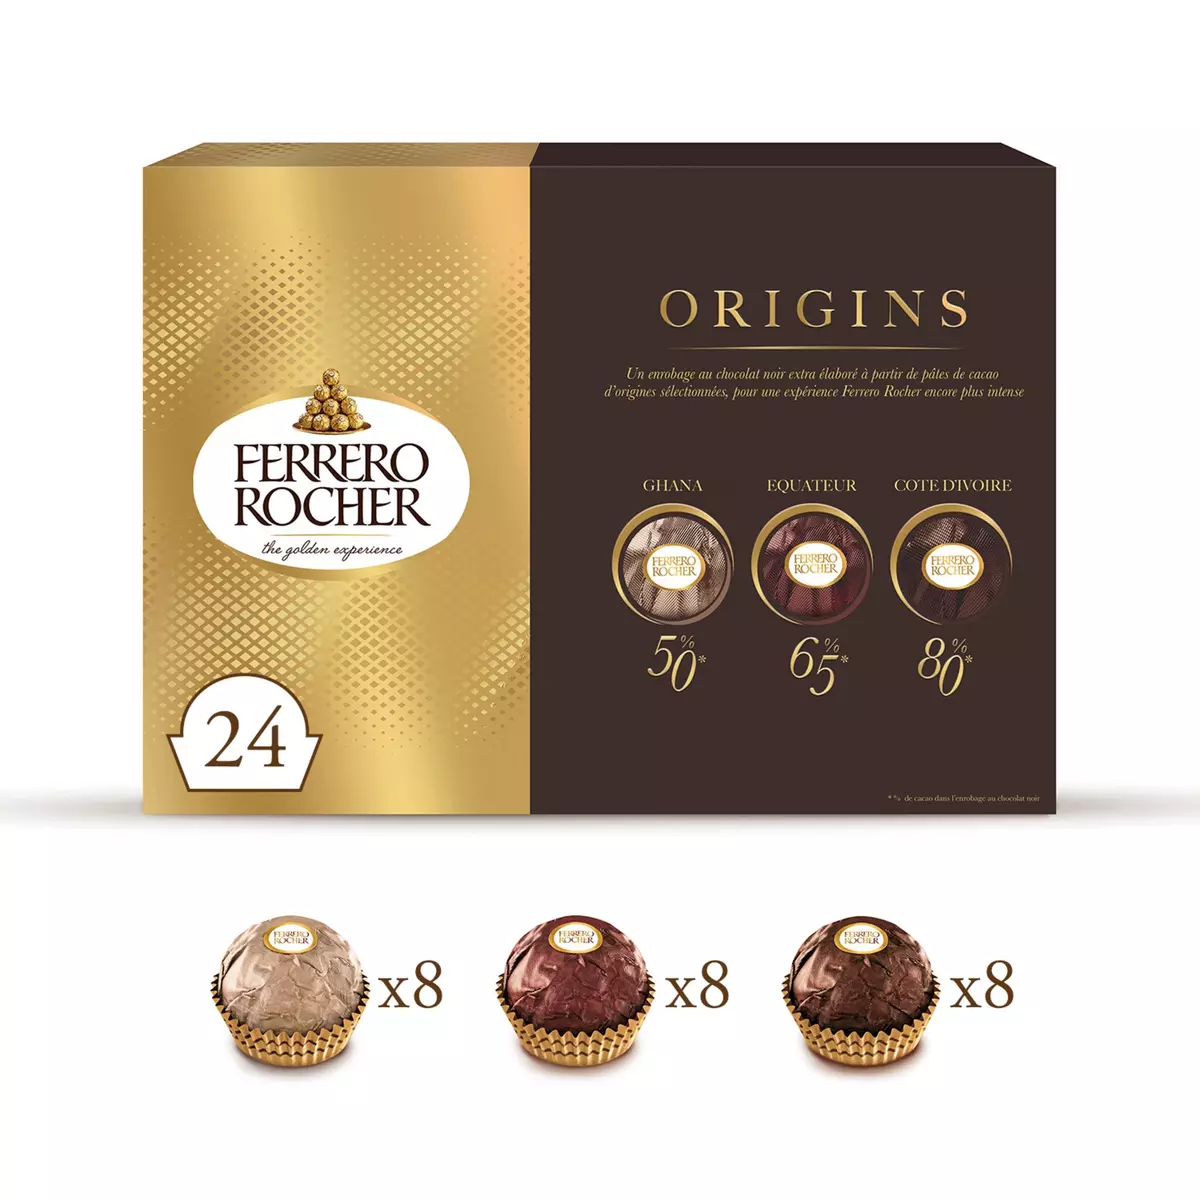 FERRERO Rocher Origins assortiment de bouchées au chocolat noir 24 pièces 300g